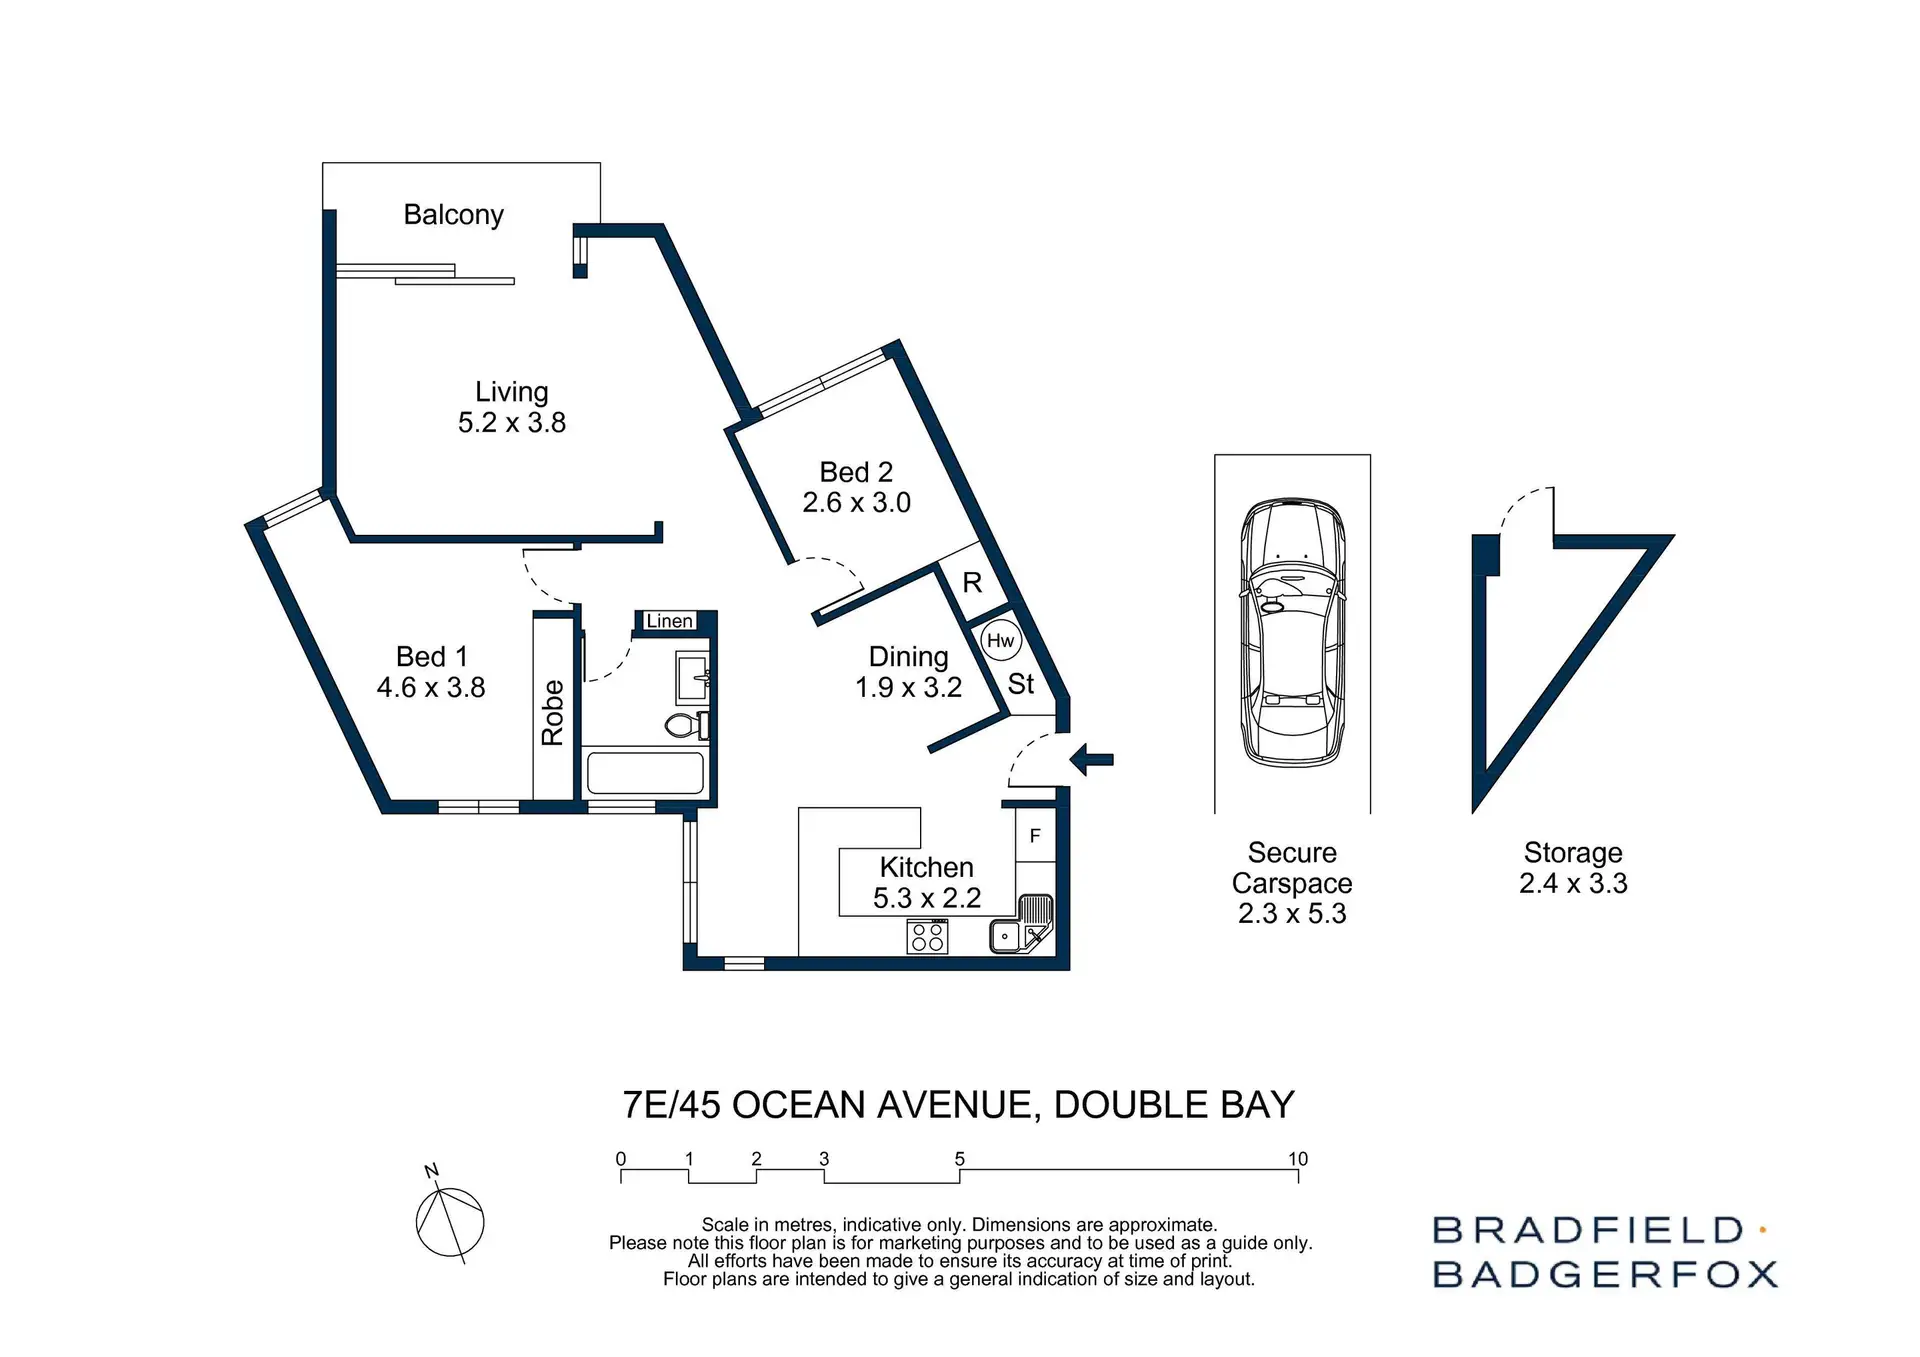 7E/45 Ocean Avenue, Double Bay Sold by Bradfield Badgerfox - image 1